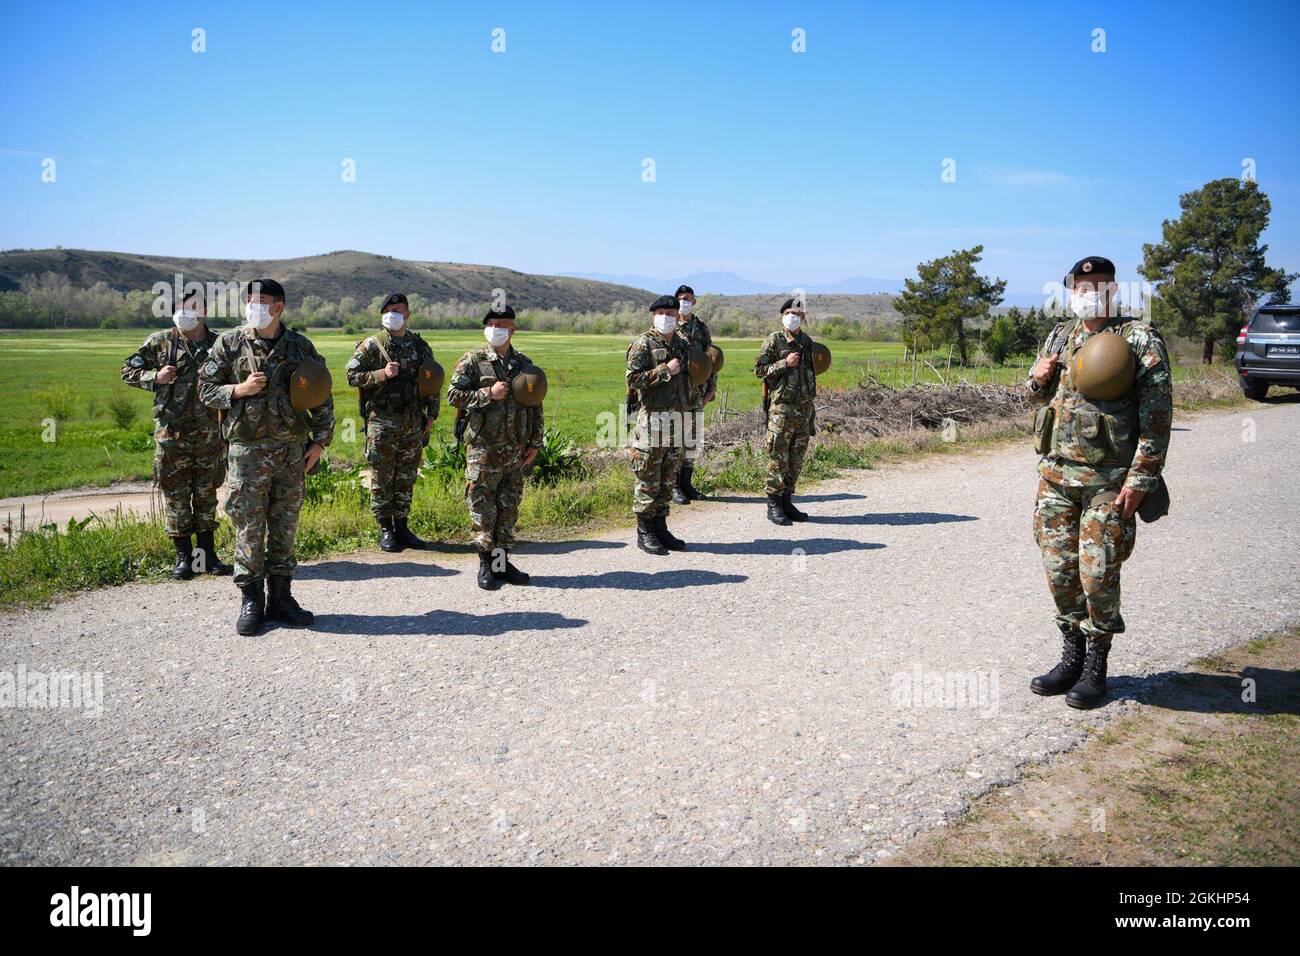 Des soldats de la Macédoine du Nord sont en formation en attendant l'arrivée du ministre de la Défense de la Macédoine du Nord pendant LE DÉFENSEUR-Europe 21 dans la zone d'entraînement militaire de Krivolak, en Macédoine du Nord, le 26 avril 2021. DEFENDER-Europe 21, un exercice annuel à grande échelle de l'armée américaine Europe et mené par l'Afrique, un exercice conjoint multinational conçu pour renforcer la préparation stratégique et opérationnelle et l'interopérabilité entre les États-Unis, les alliés de l'OTAN et les partenaires. Banque D'Images